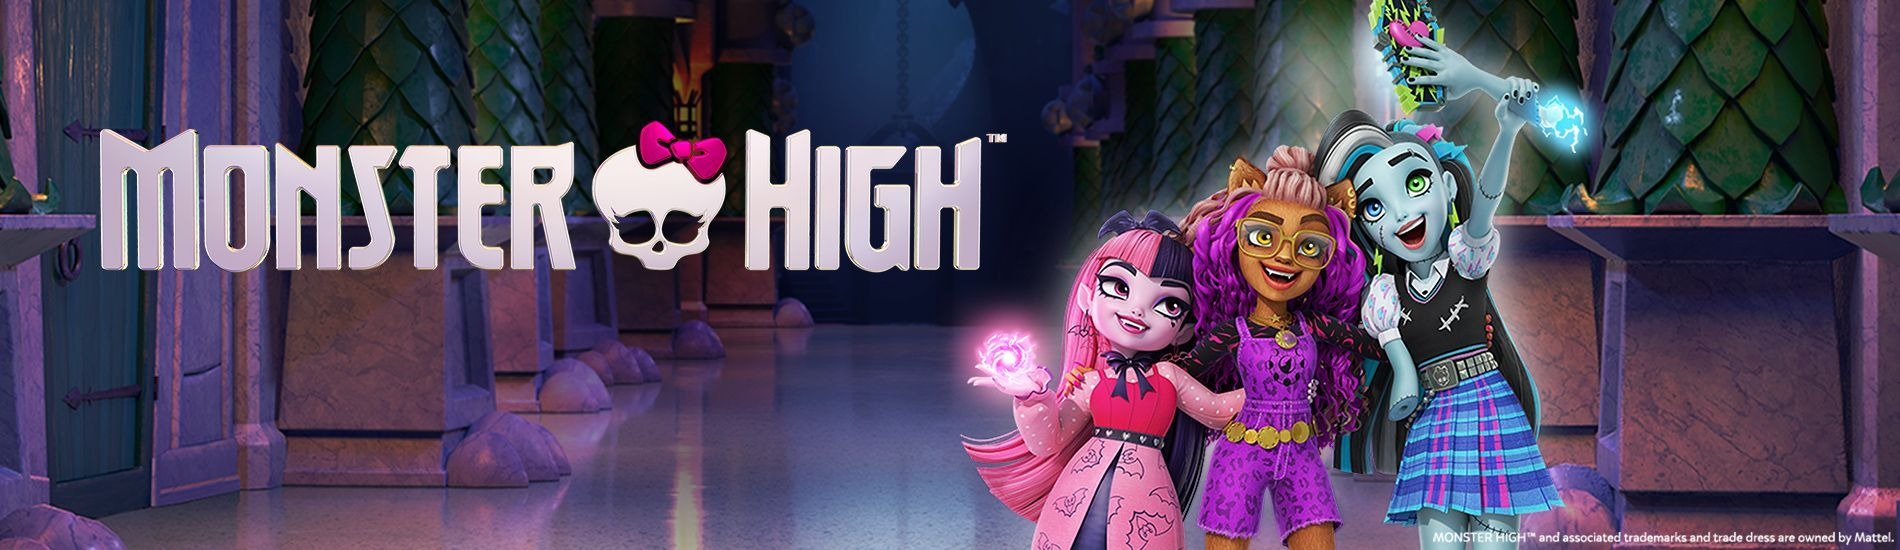 Monster High un téléfilm en images de synthèse pour quel âge ?